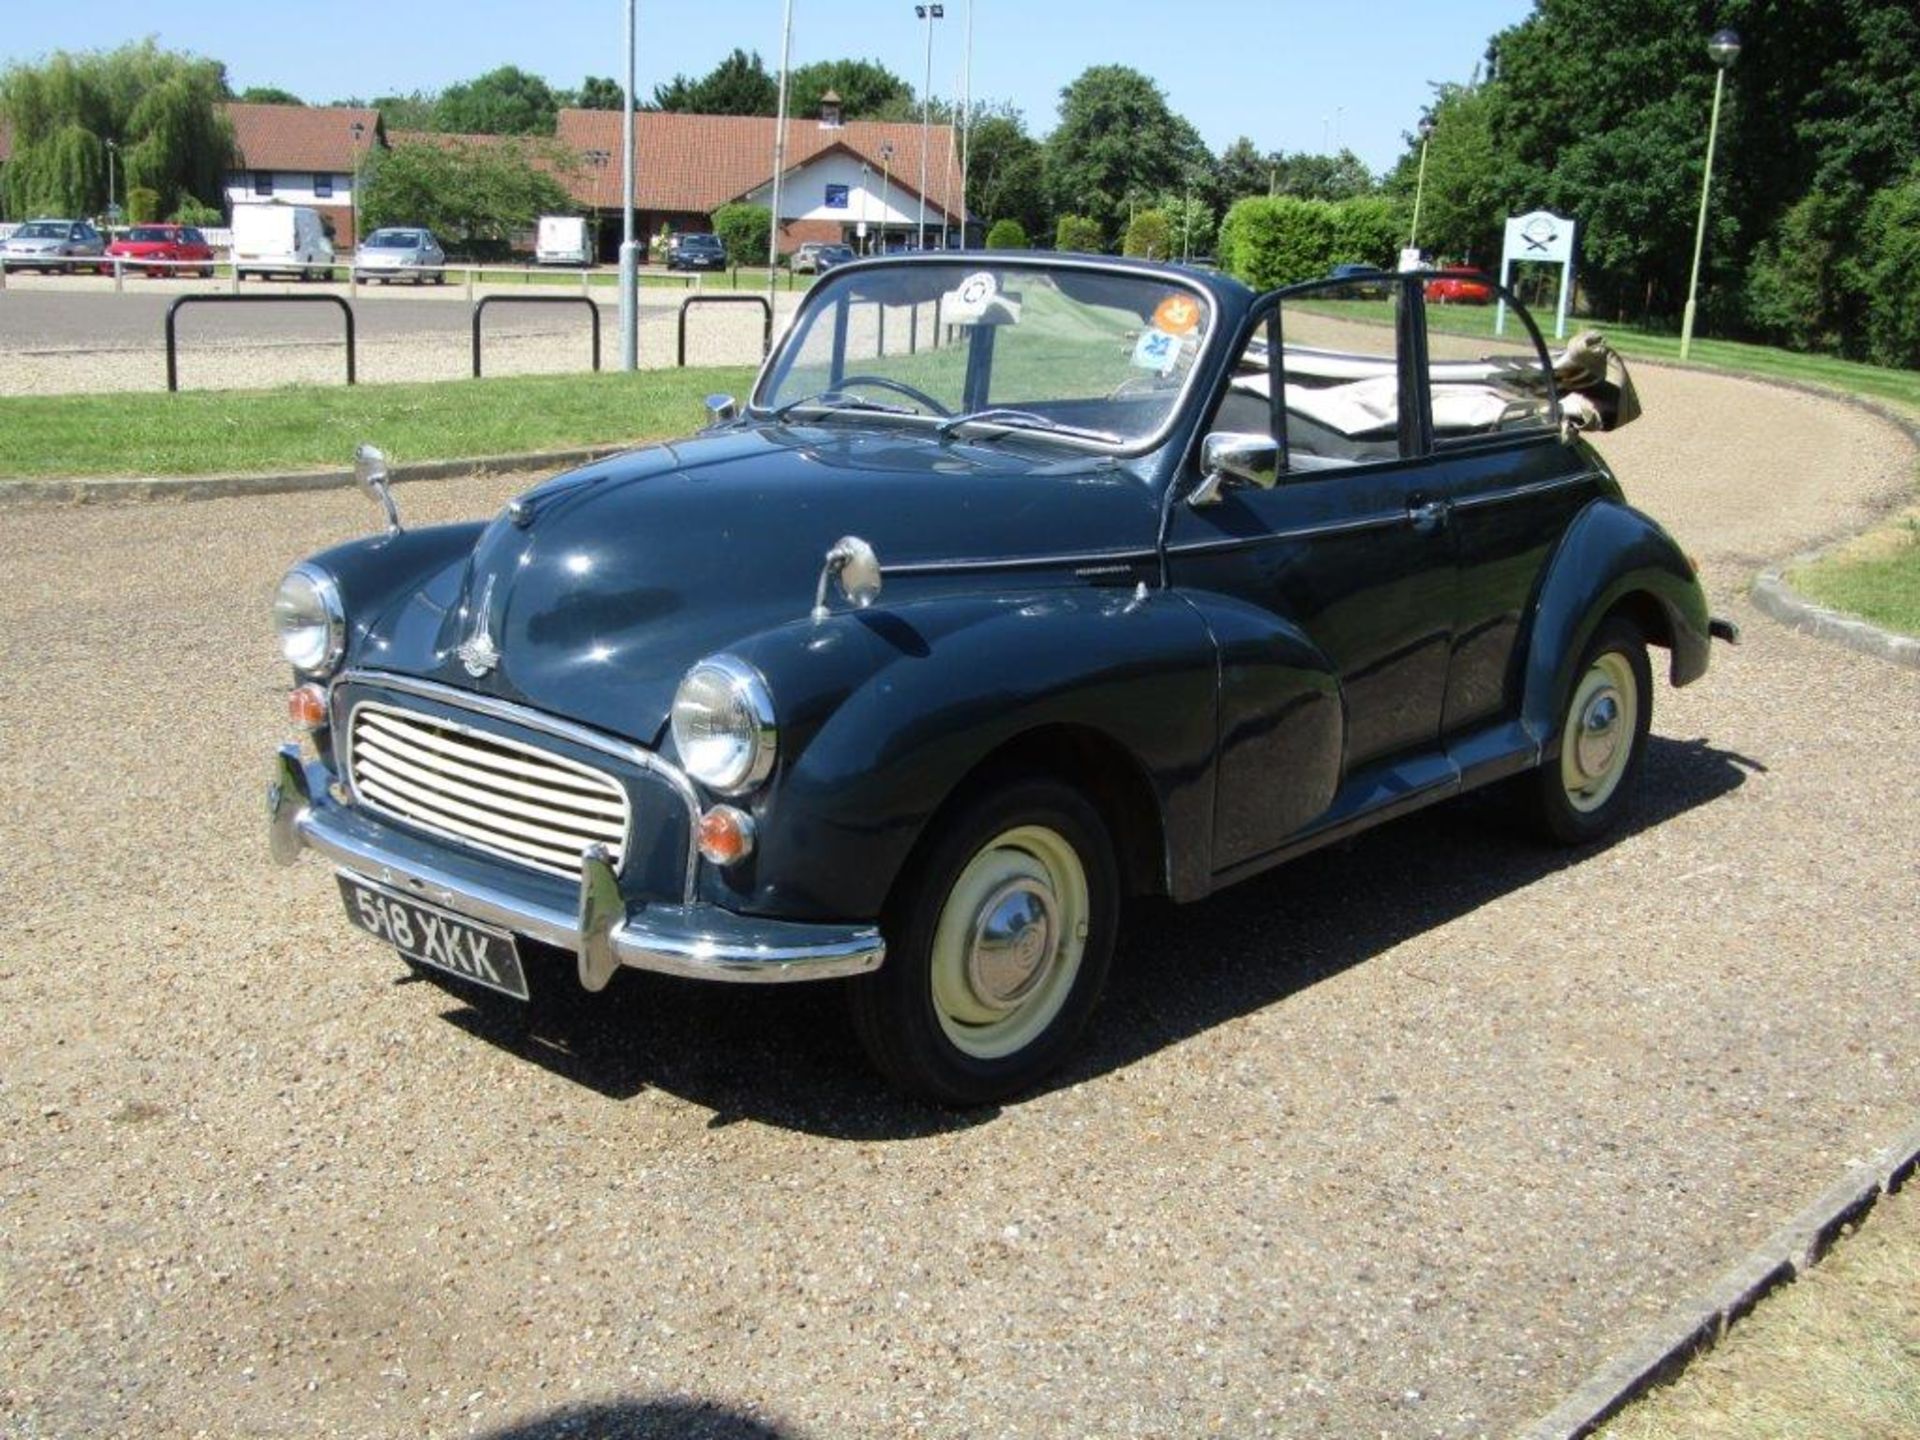 1963 Morris Minor 1000 Convertible - Image 3 of 26